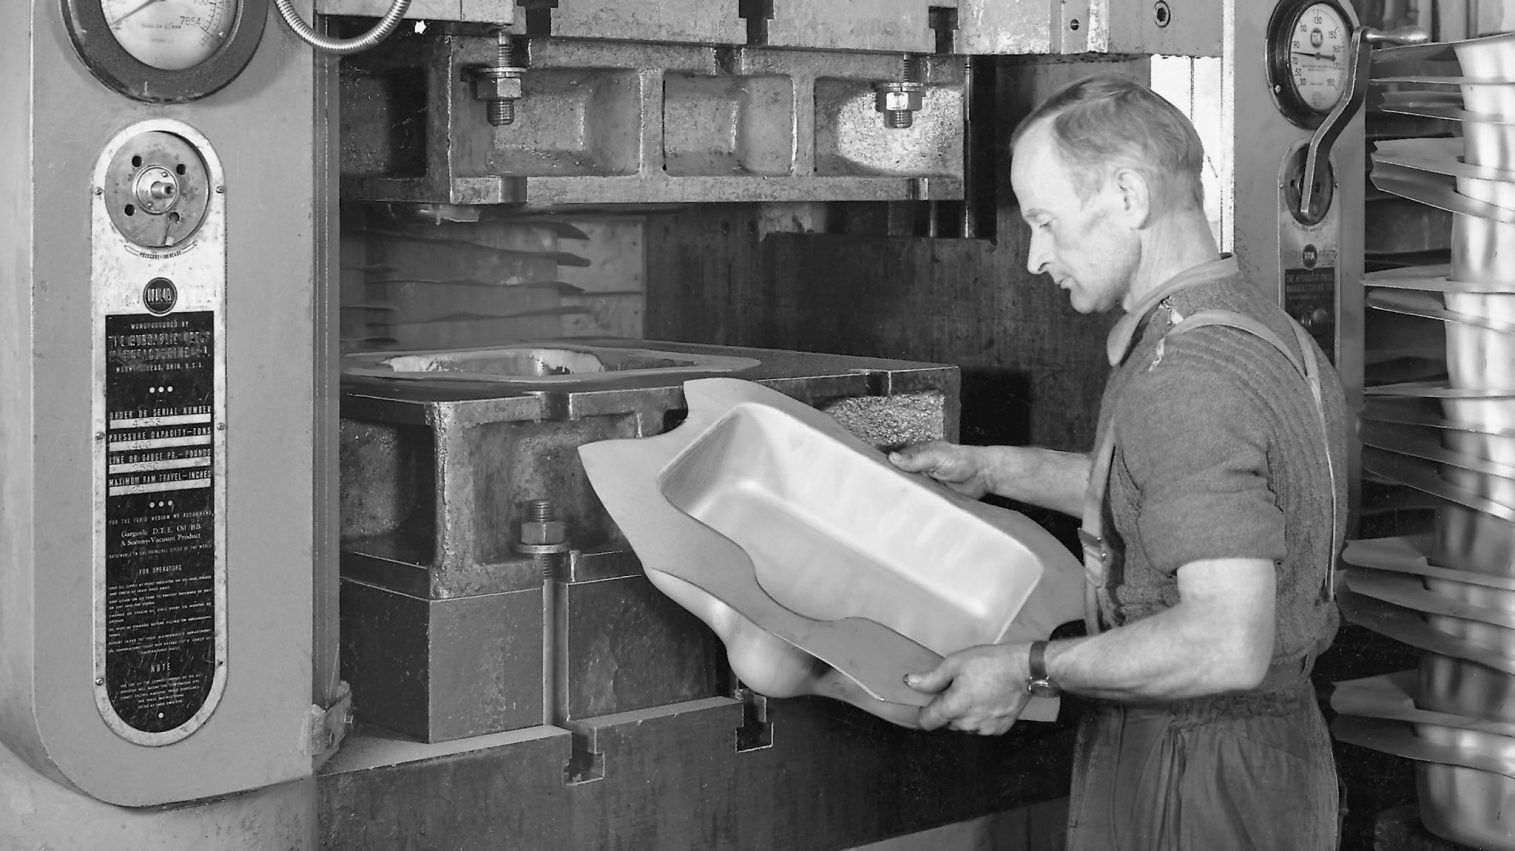 Franke metalworker manufacturing sink in the nineteenthirties